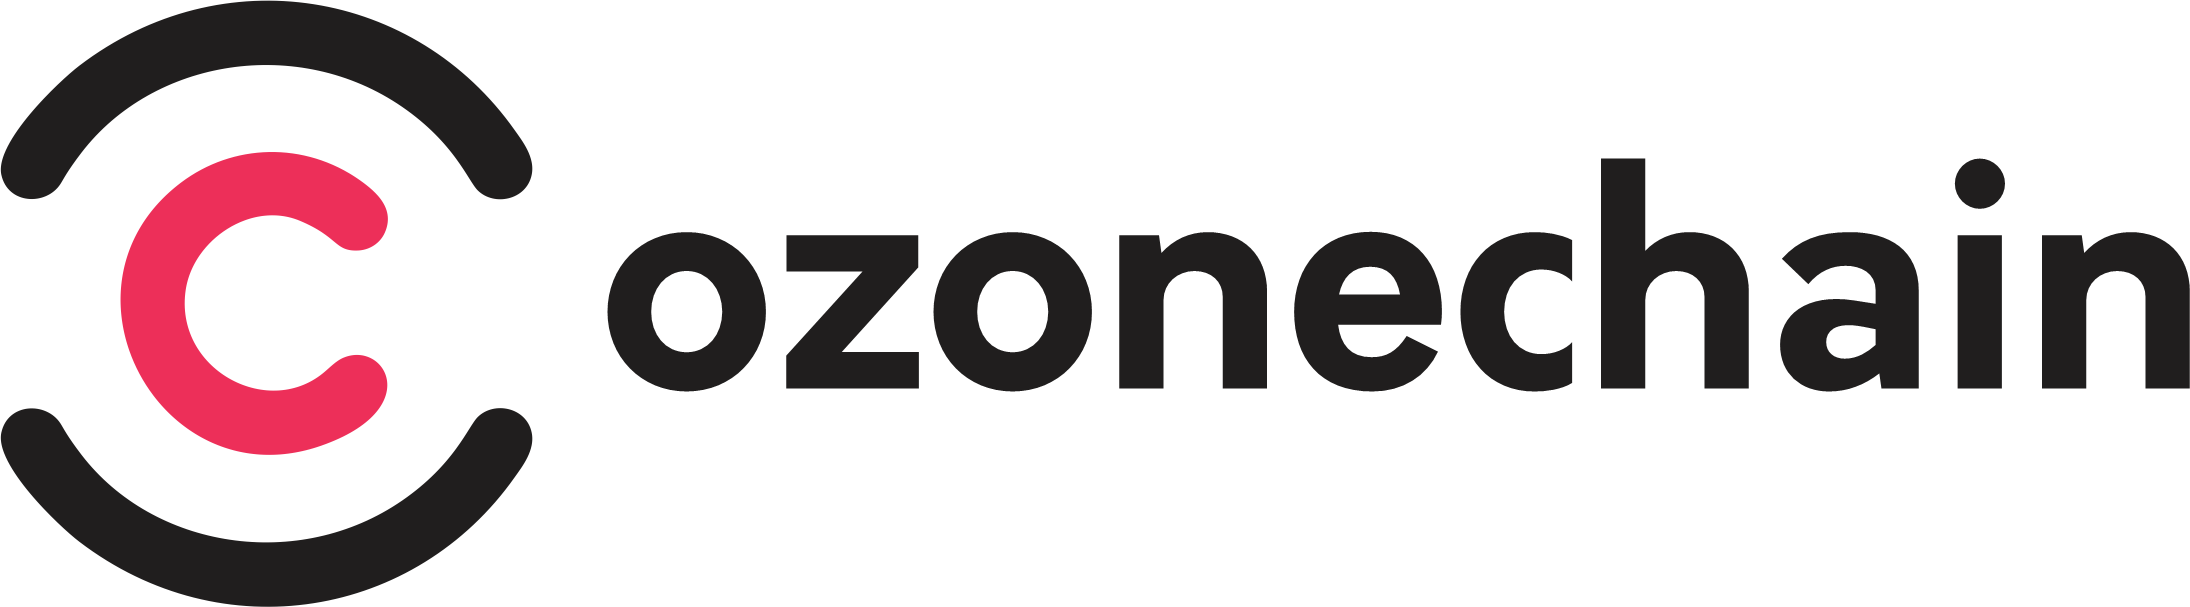 OZONE Logo